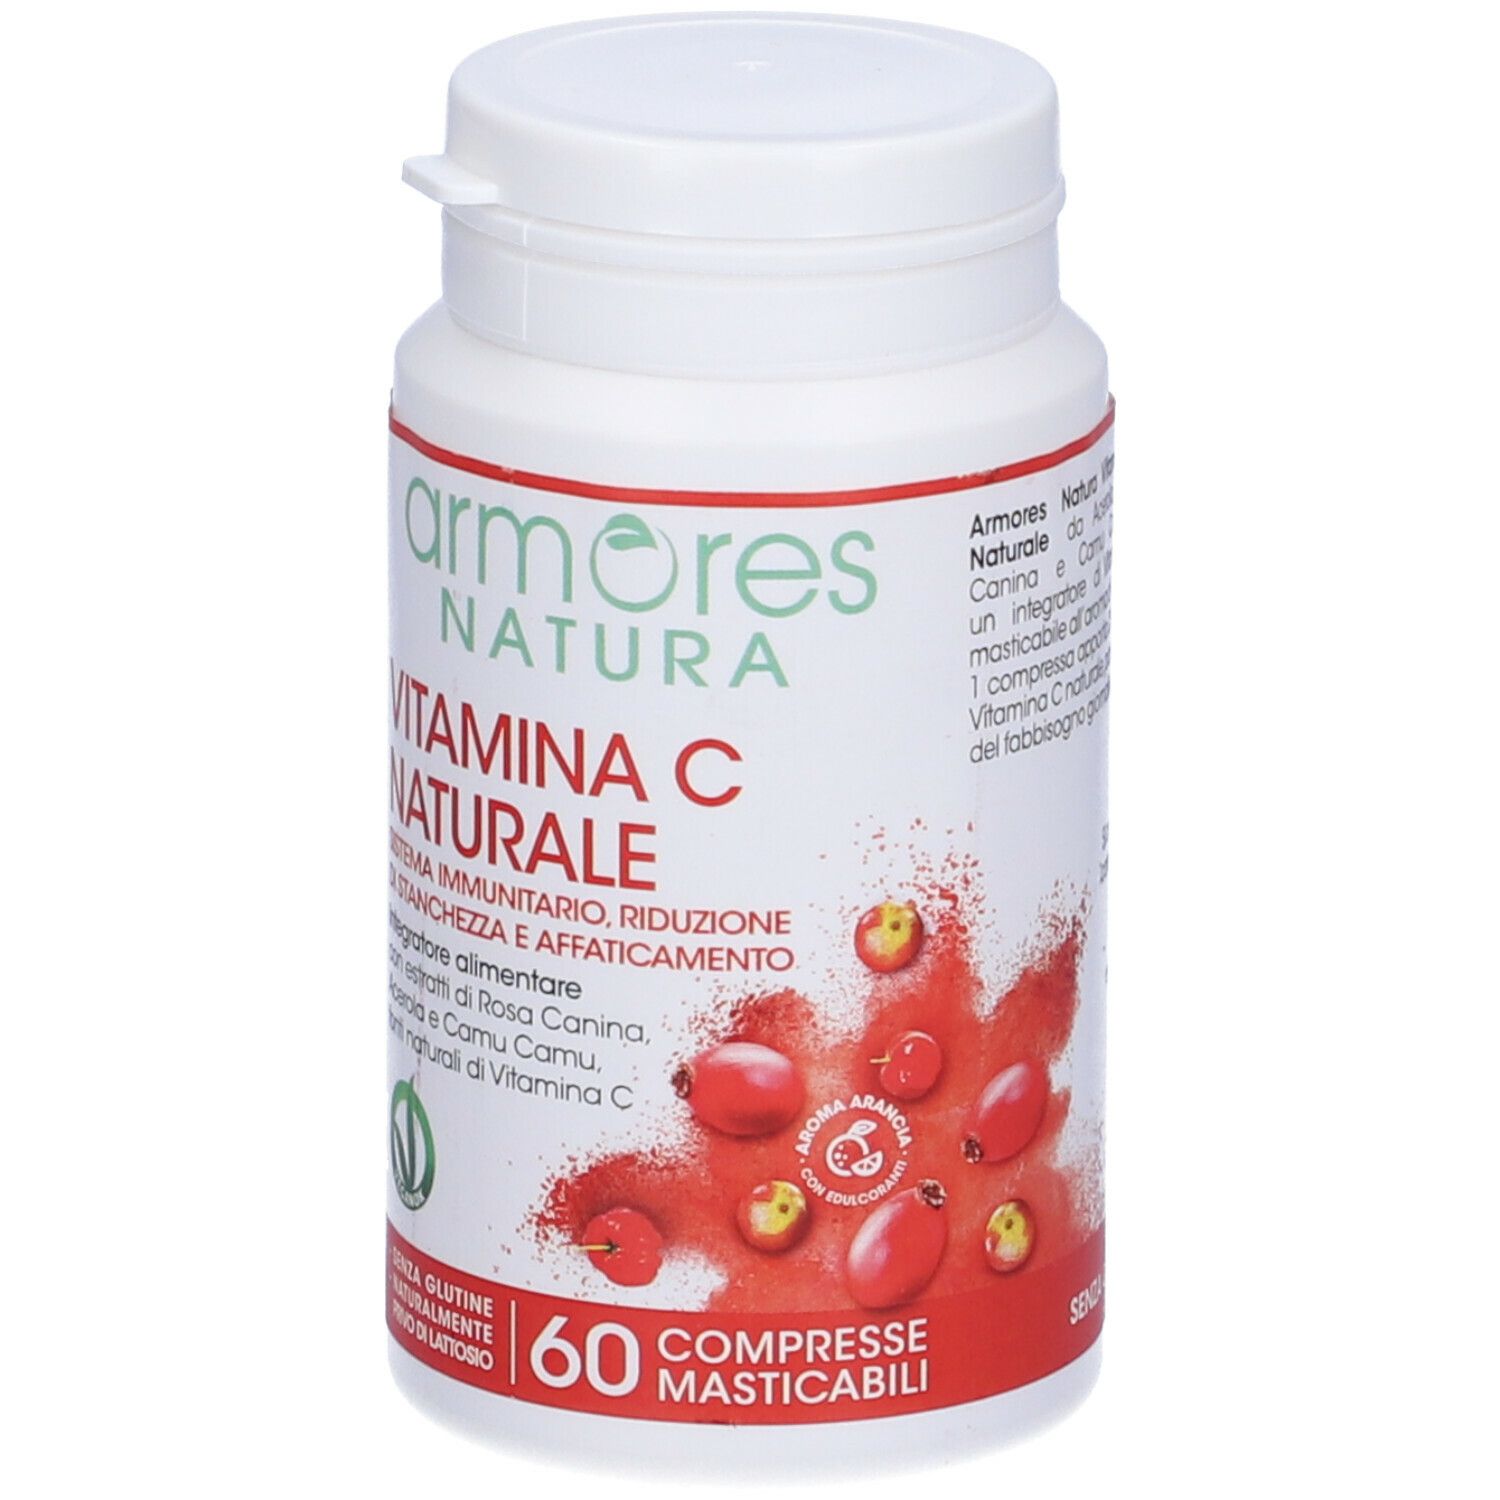 Armores Natura Vitamina C Naturale 84 g